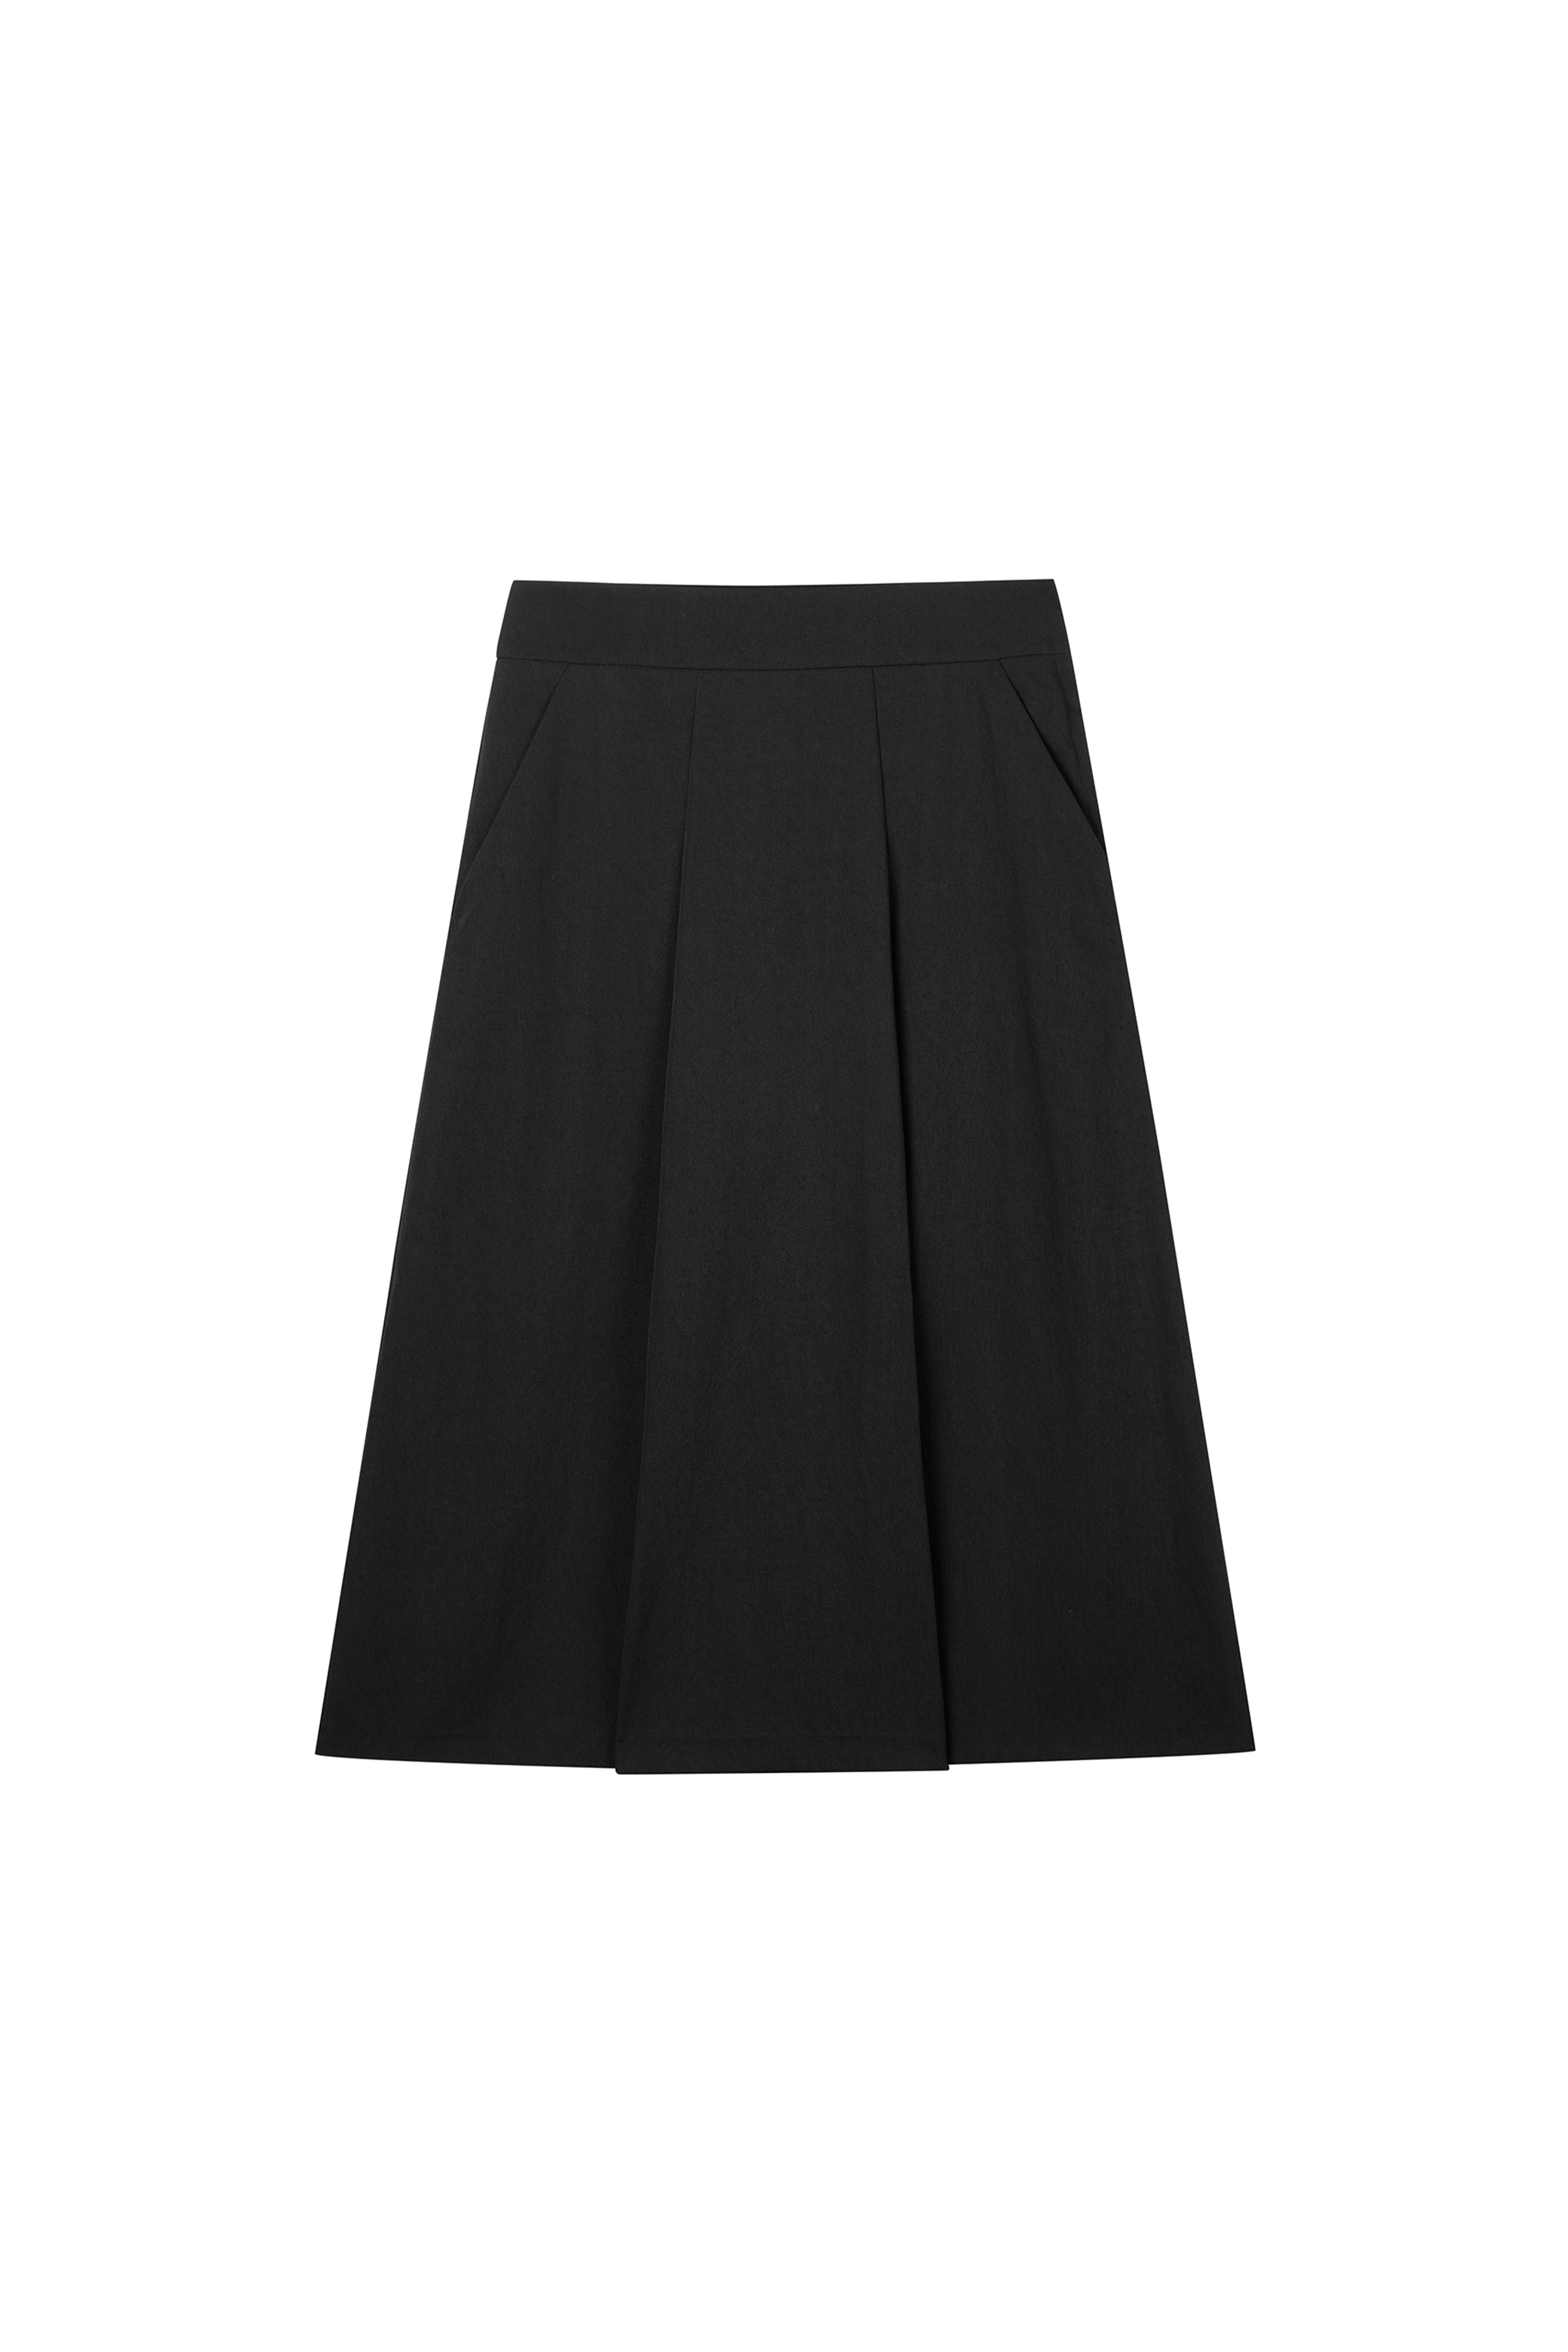 Phoebe Pleats Skirt Black